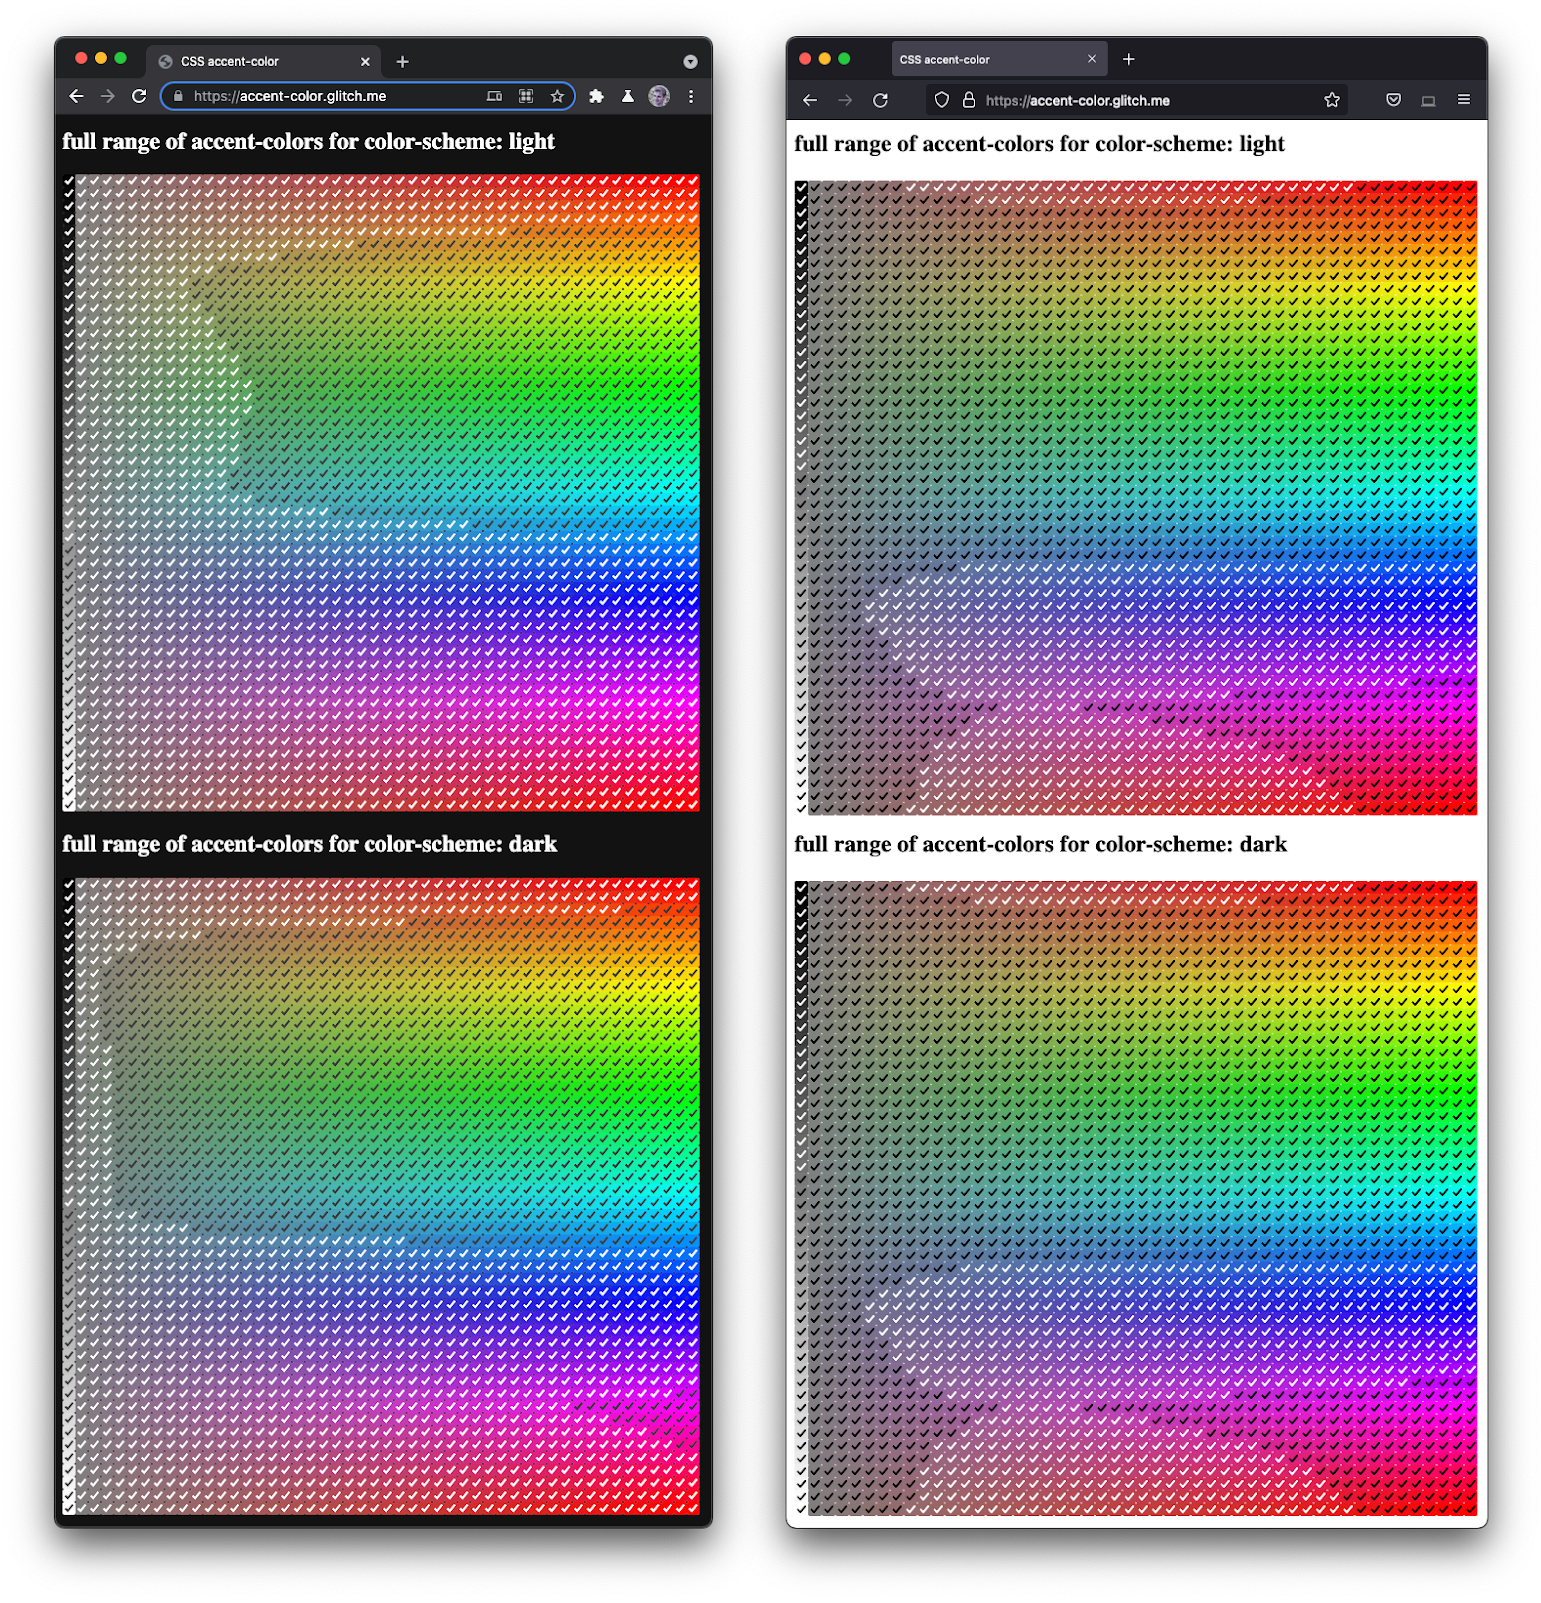 Screenshot von Firefox und Chromium nebeneinander, in dem eine ganze Reihe von Kästchen in verschiedenen Farbtönen und Dunkelheit angezeigt wird